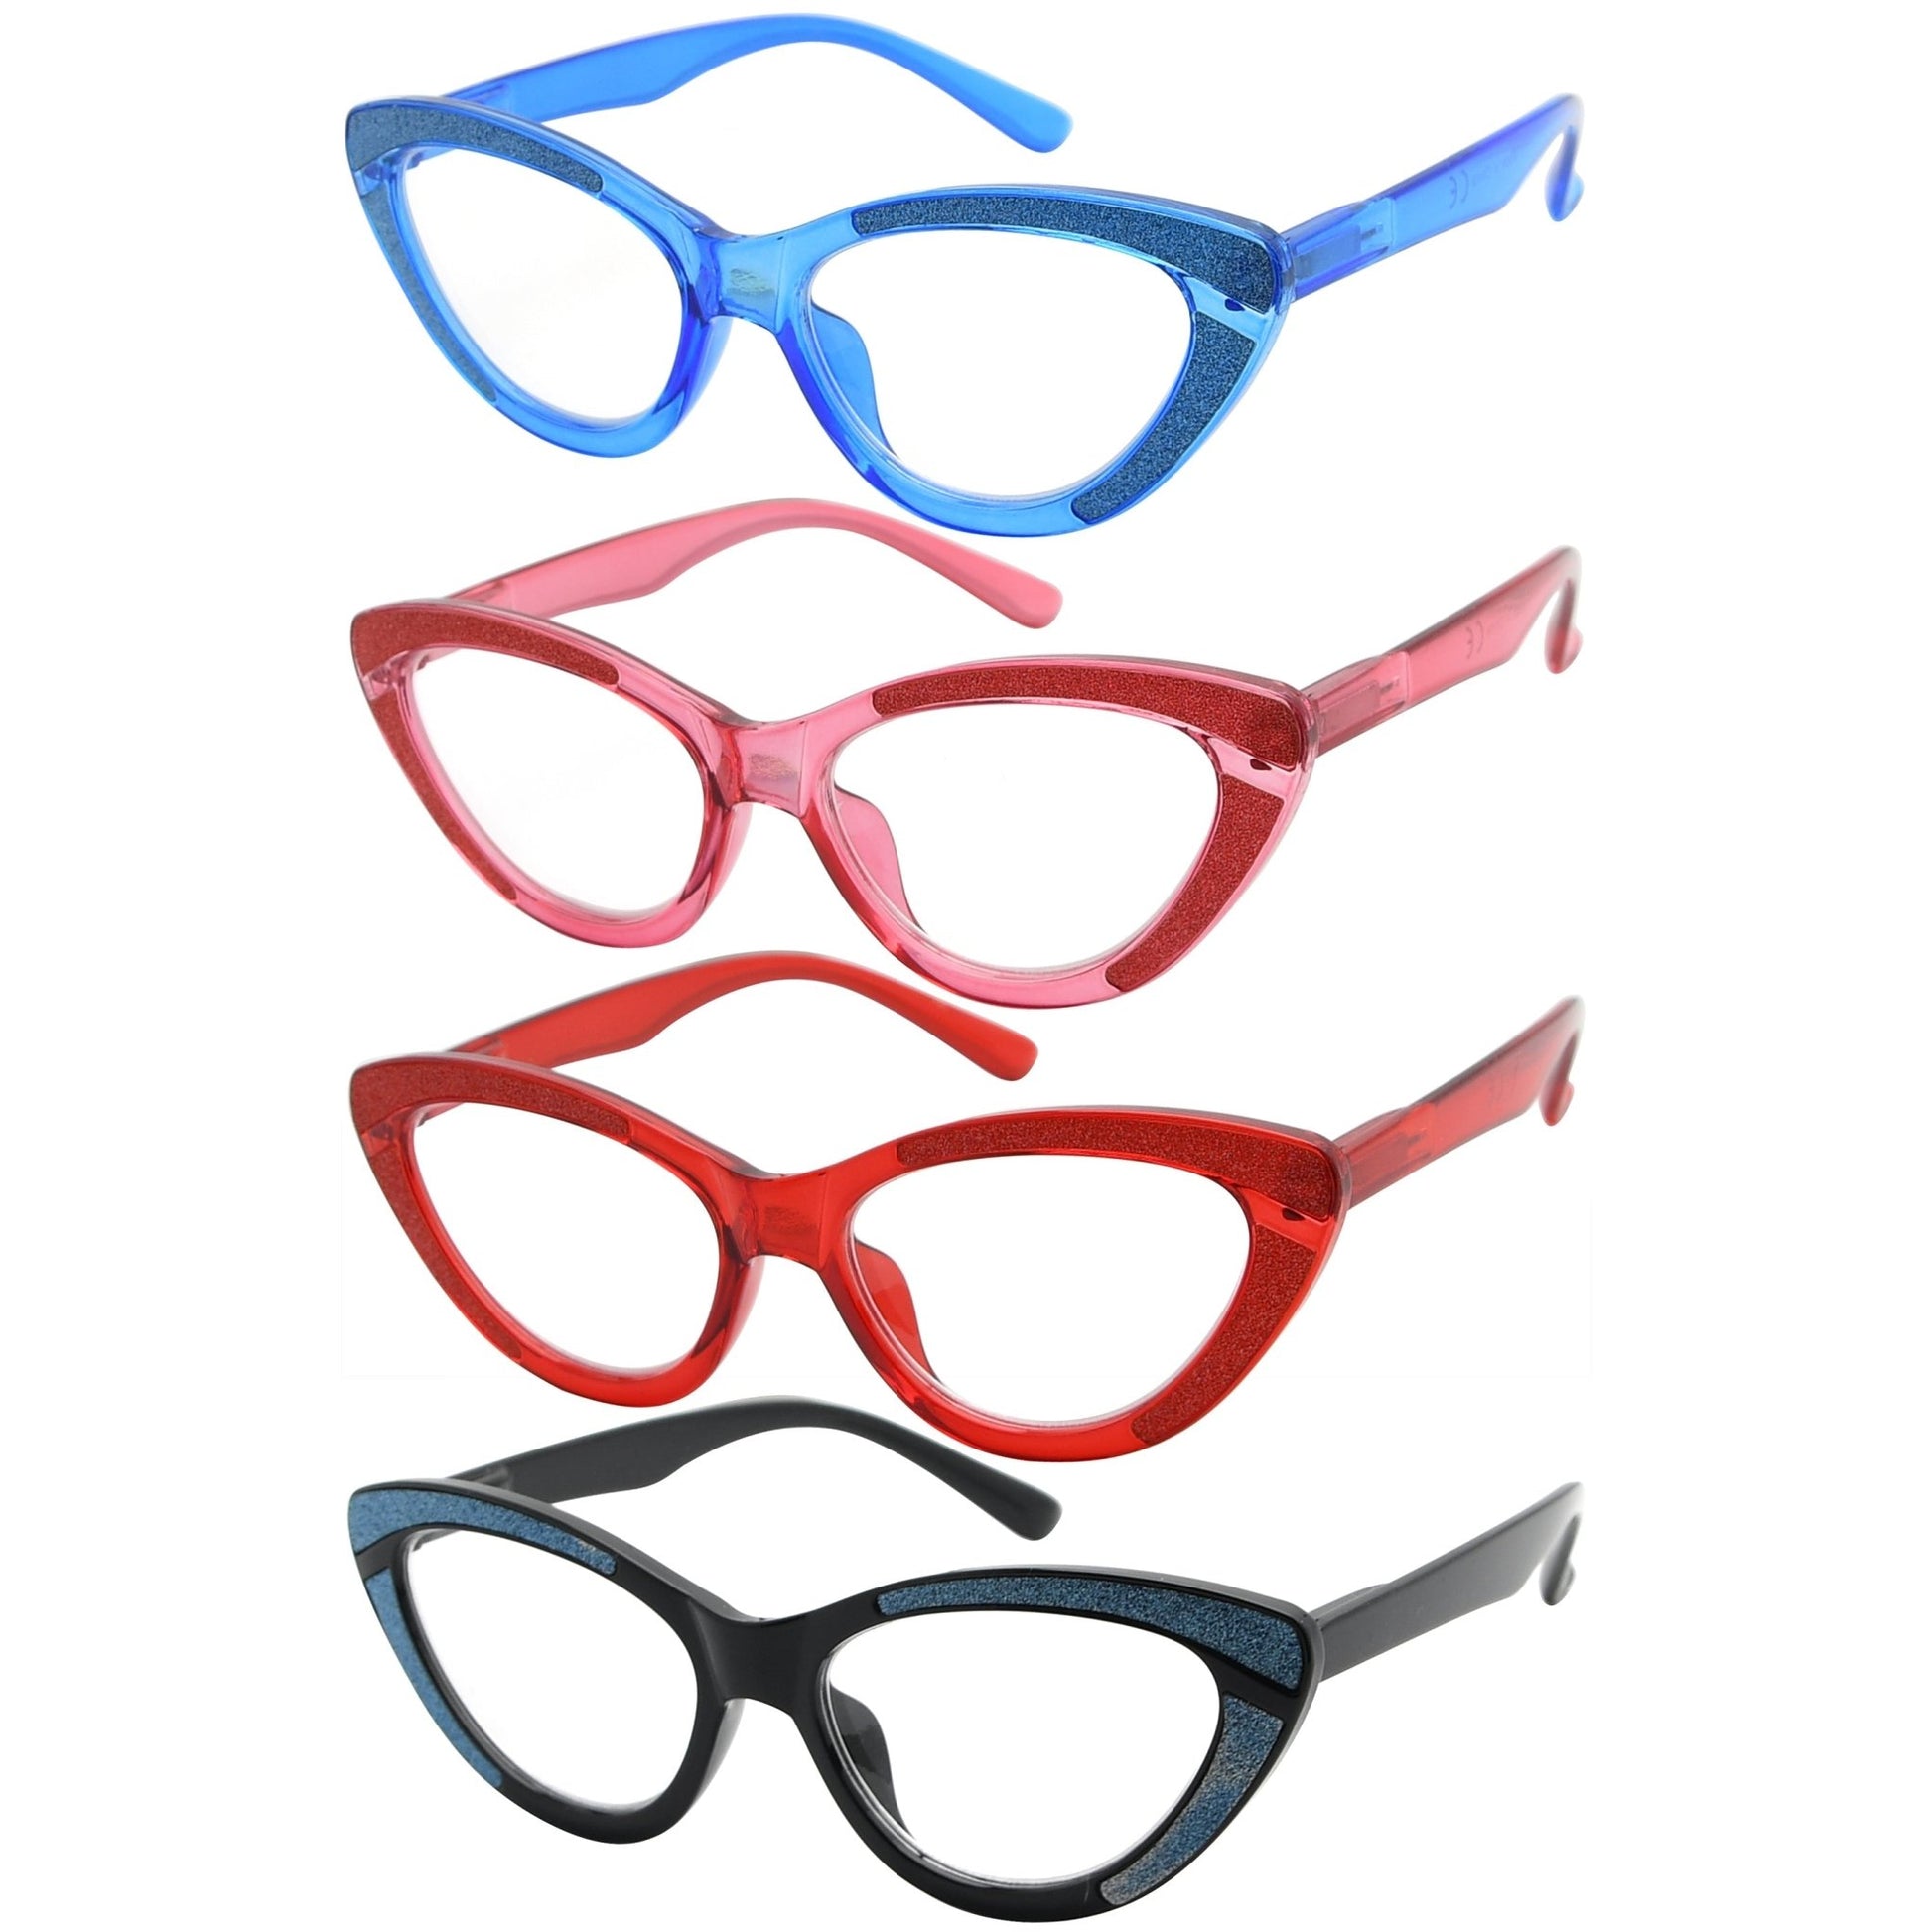 4 Pack Cat-eye Design Chic Reading Glasses for Women R2029